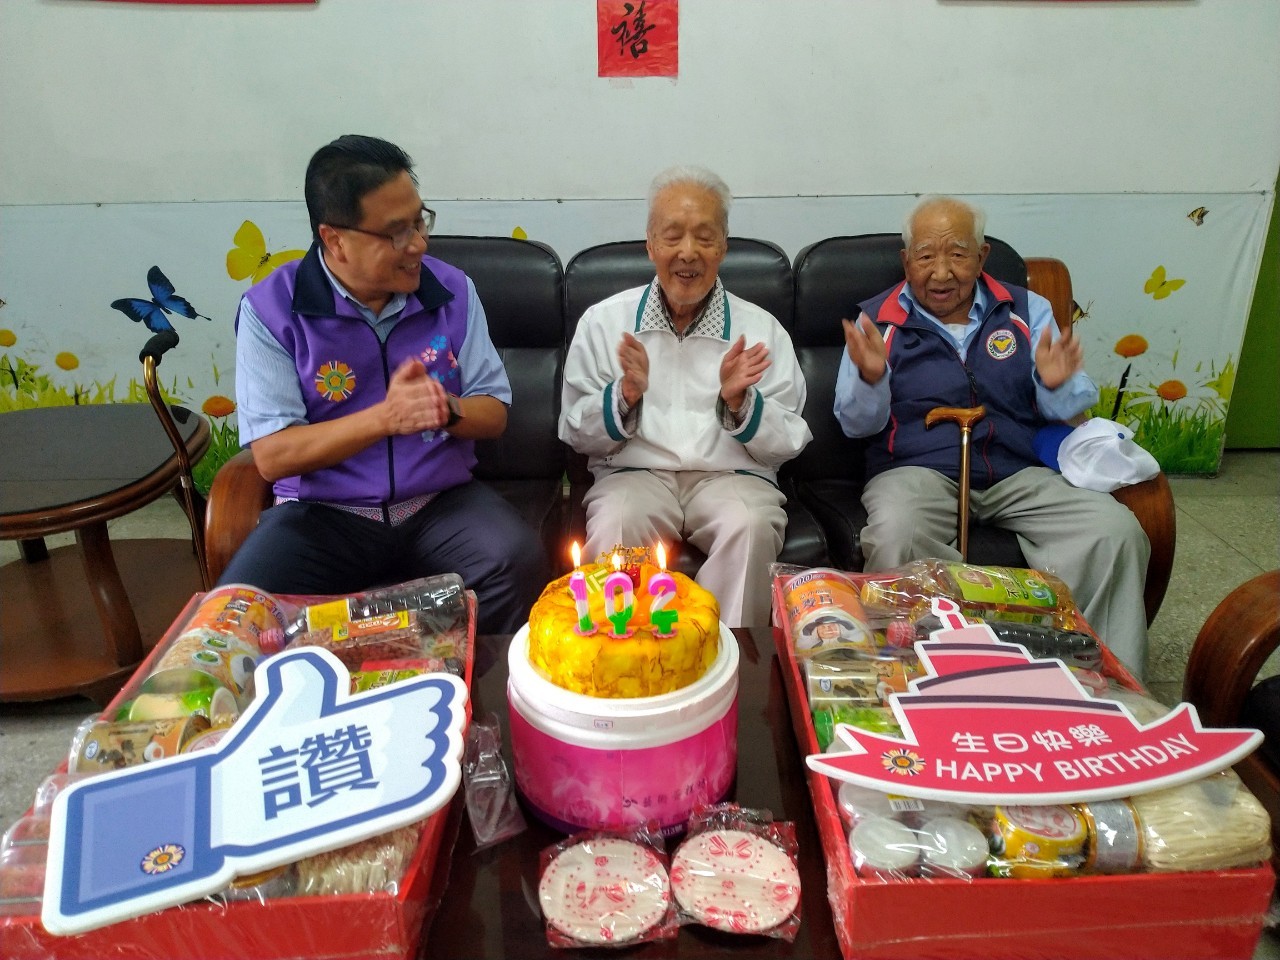 歡慶榮民徐伯伯102歲生日及中秋節快樂!!